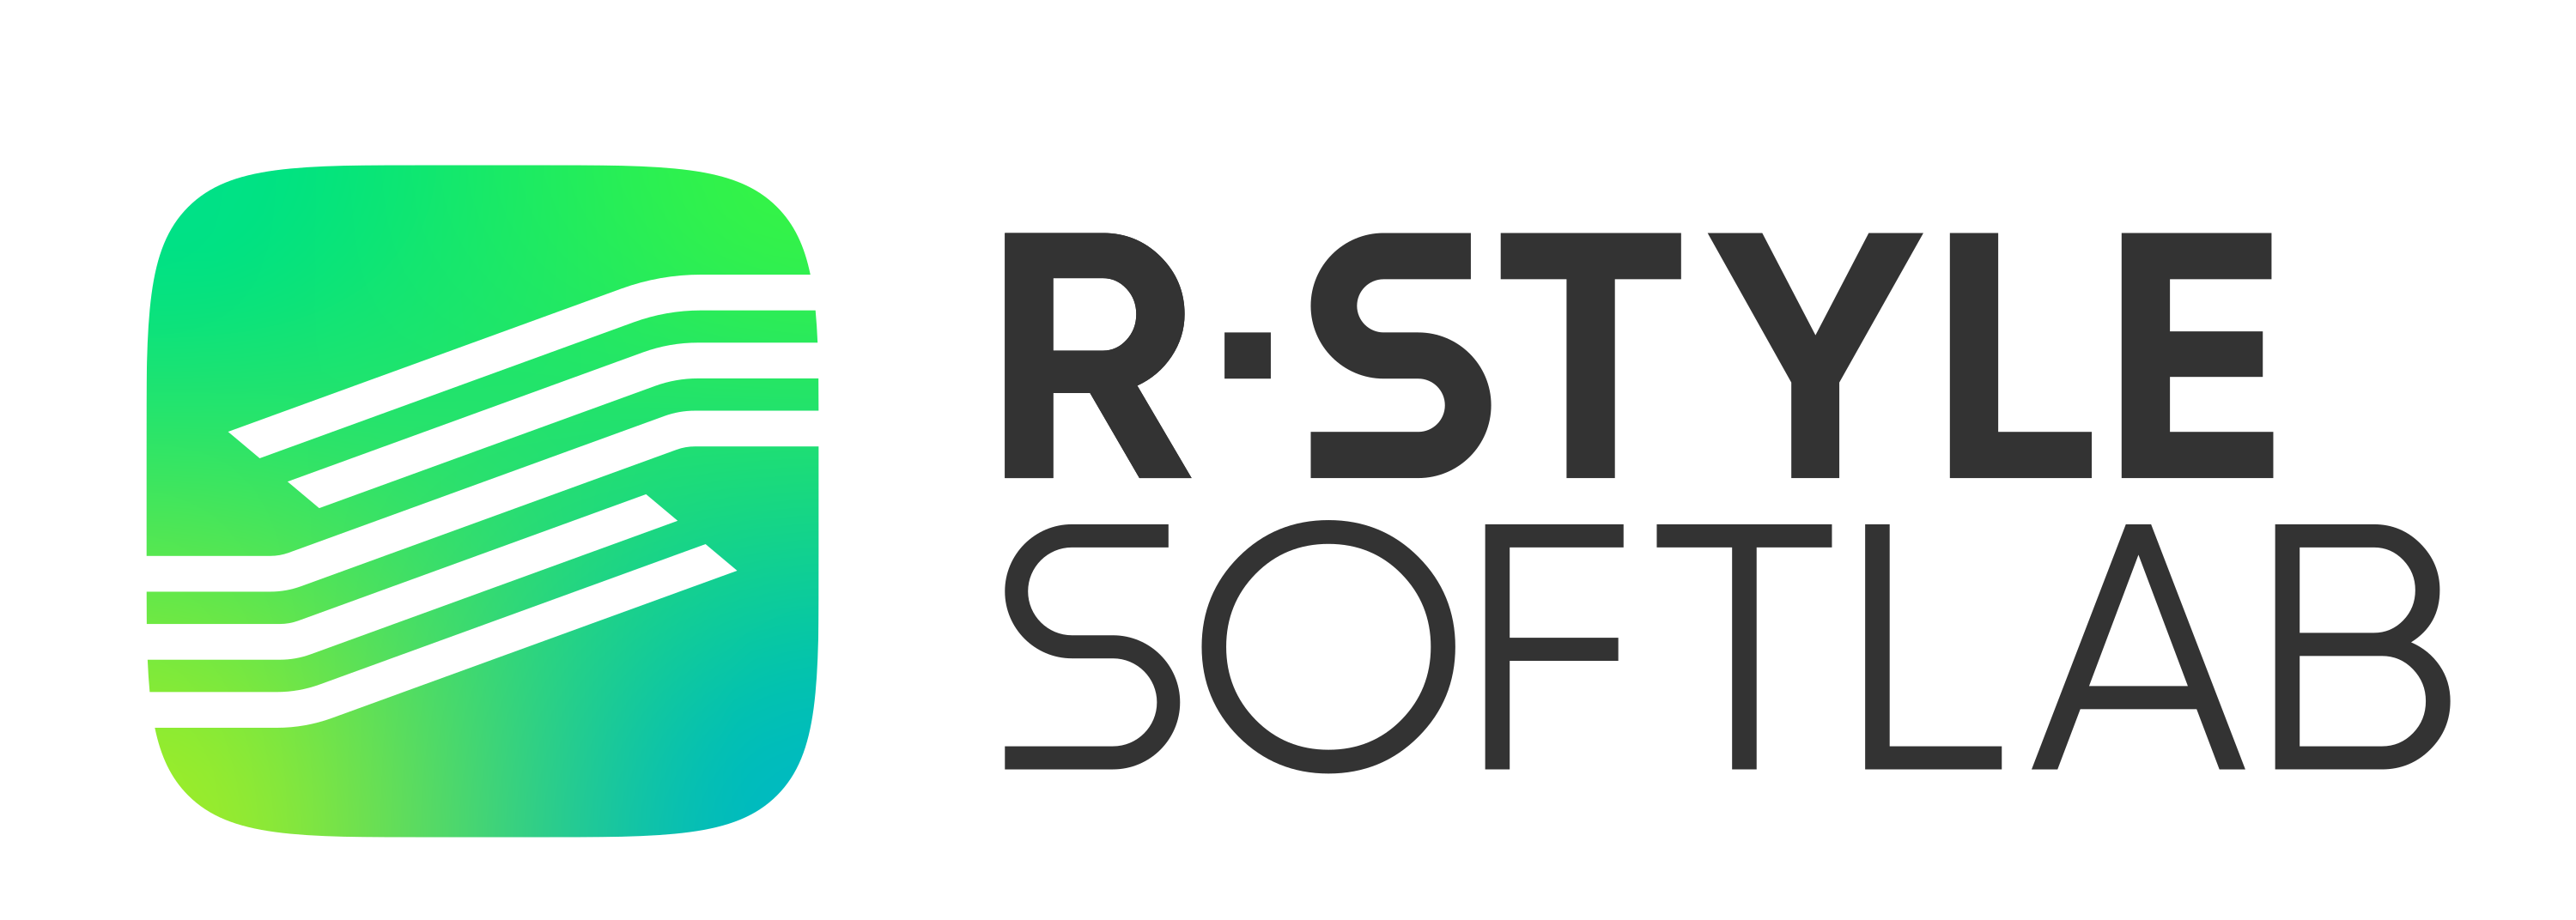 R-SoftLab_logo